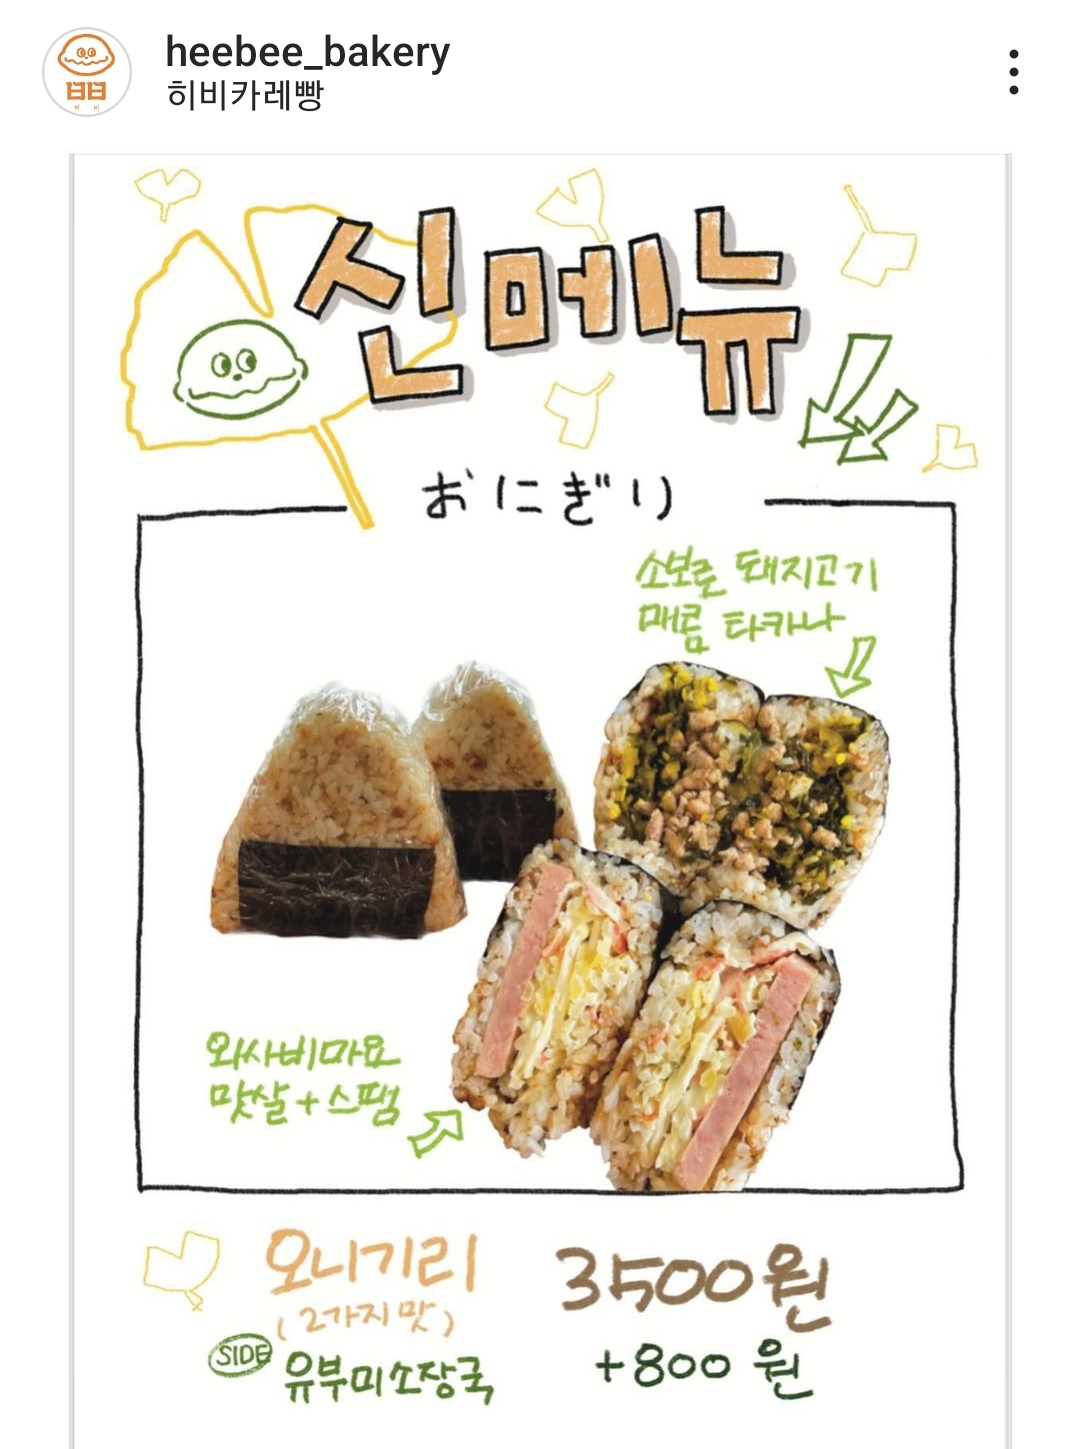 홍대 연남동 맛집 히비카레빵